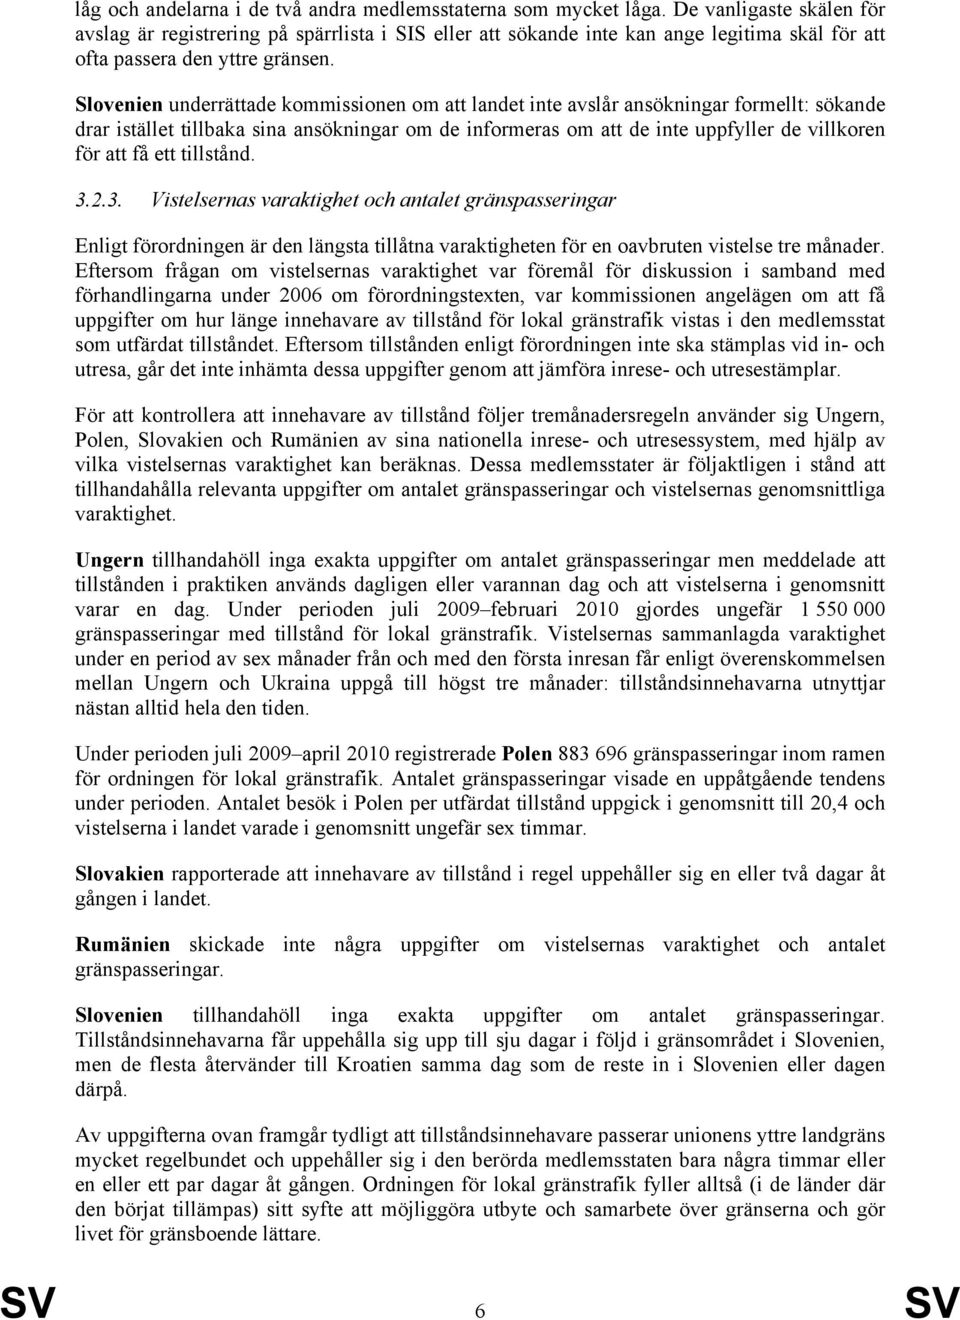 Slovenien underrättade kommissionen om att landet inte avslår ansökningar formellt: sökande drar istället tillbaka sina ansökningar om de informeras om att de inte uppfyller de villkoren för att få